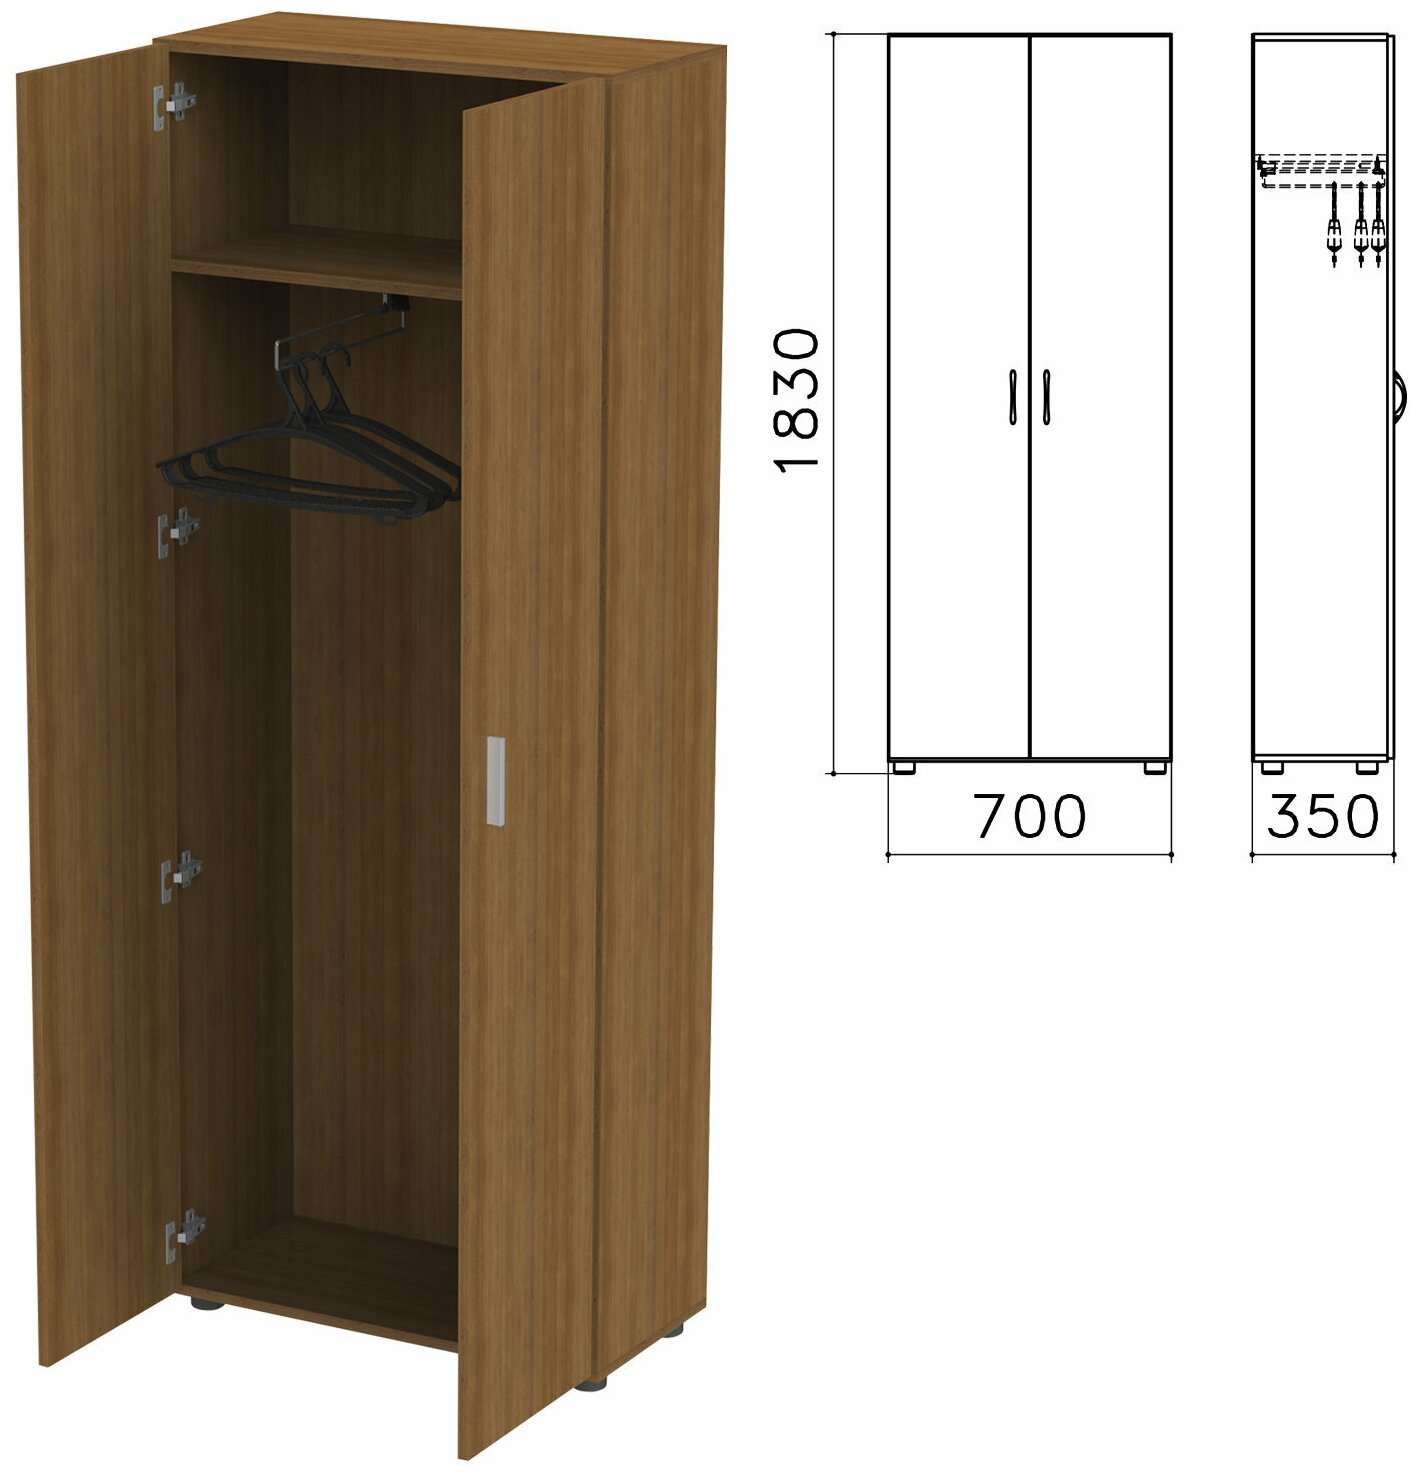 Шкаф для одежды "Канц", 700х350х1830 мм, цвет орех пирамидальный, ШК40.9 В комплекте: 1шт.